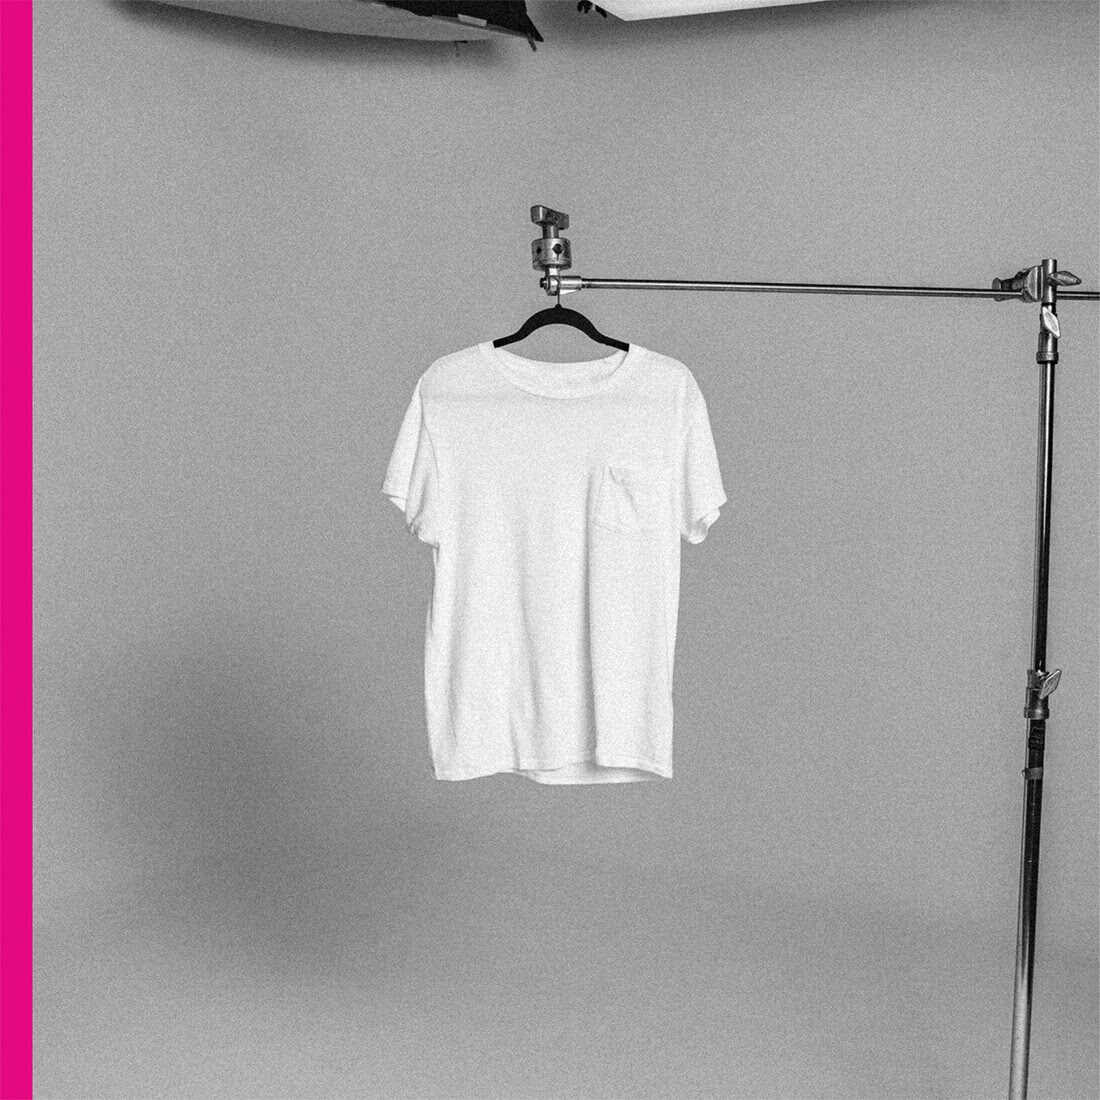 Plain White T's new album cover: black and white photo of a white t-shirt